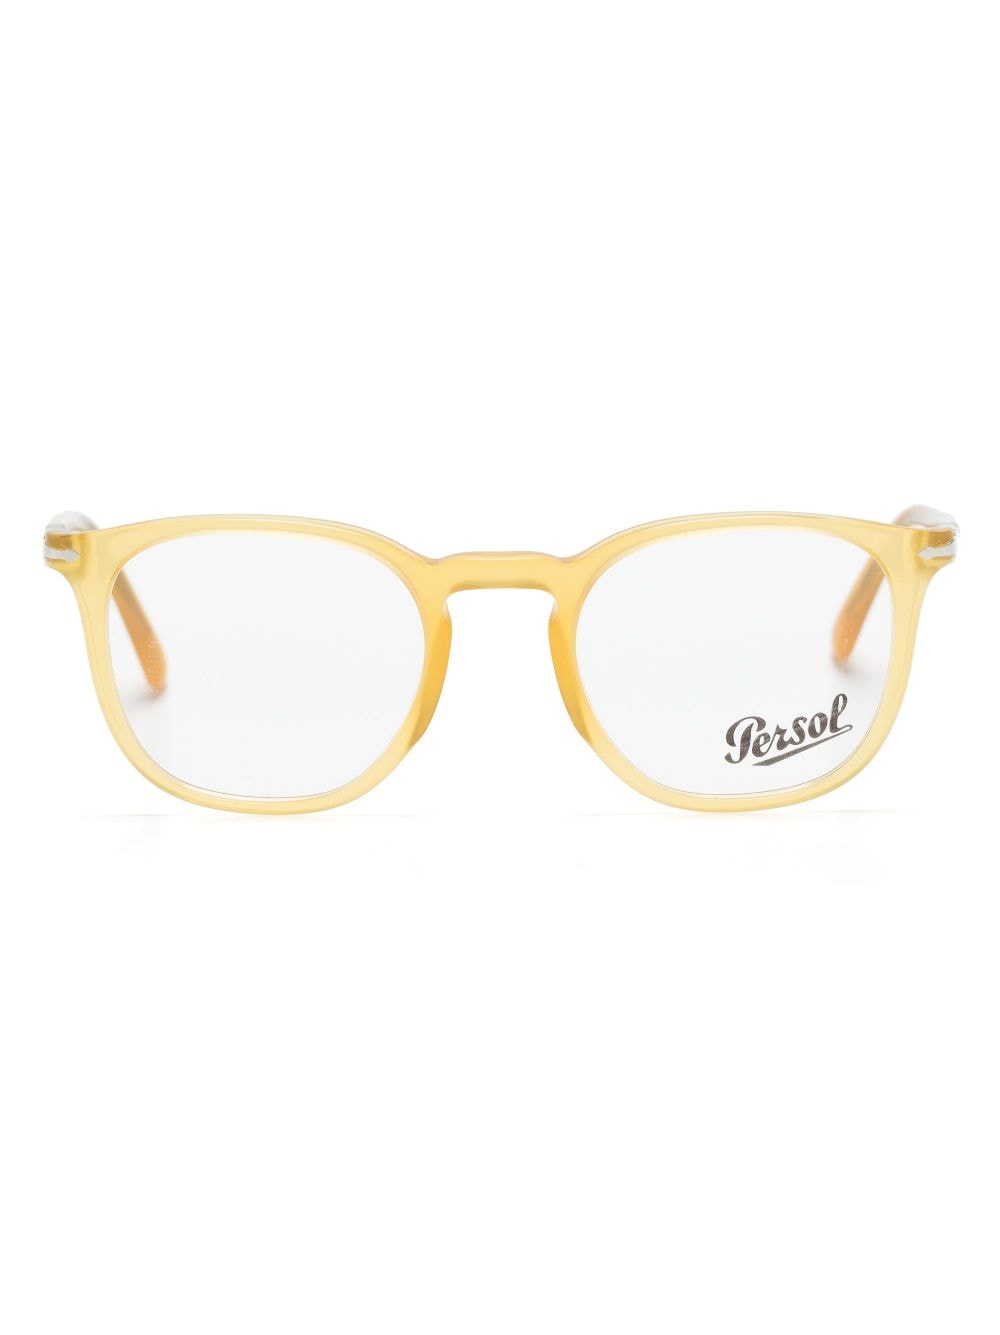 Persol 3318V square optical glasses - Yellow von Persol